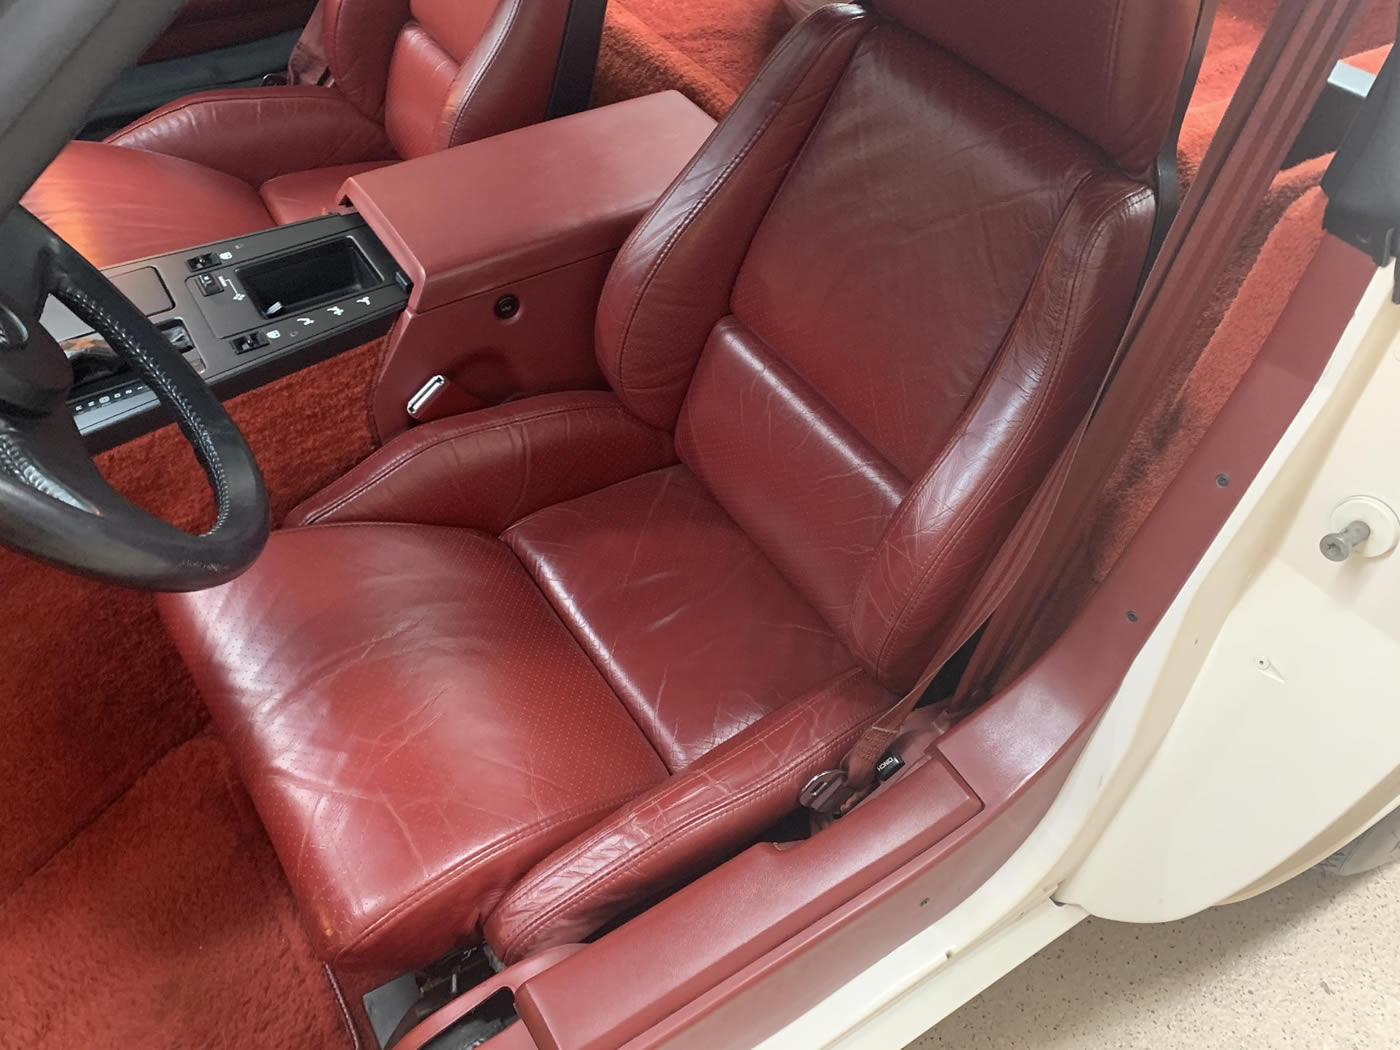 1985 Corvette in White with Carmine Leather Interior